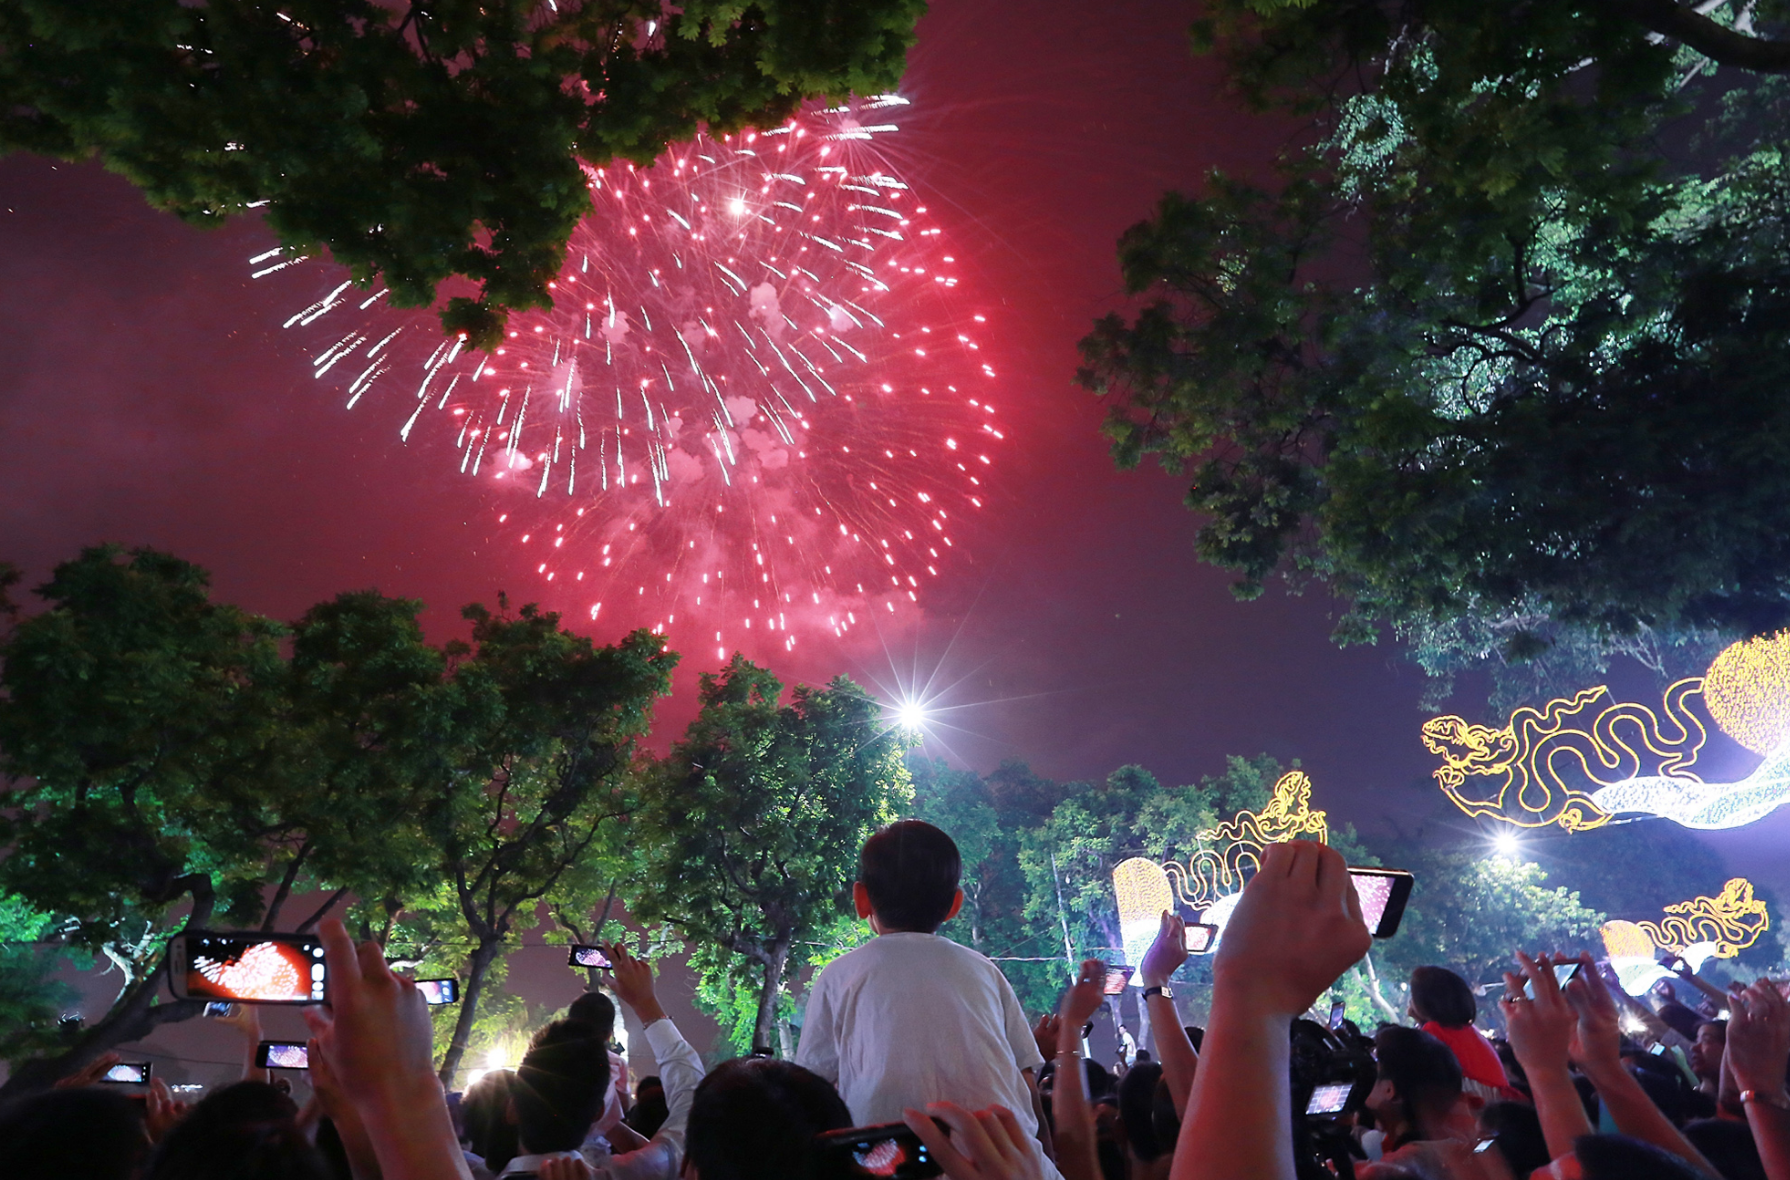 Tết Nguyên Đán luôn được xem là mùa lễ hội lớn nhất trong năm. Hãy cùng xem hình ảnh pháo hoa của Hà Nội, Sài Gòn, Đà Nẵng và Cần Thơ để có được cái nhìn chi tiết hơn về sự tưng bừng và rực rỡ của bộ môn nghệ thuật này trong dịp lễ này.